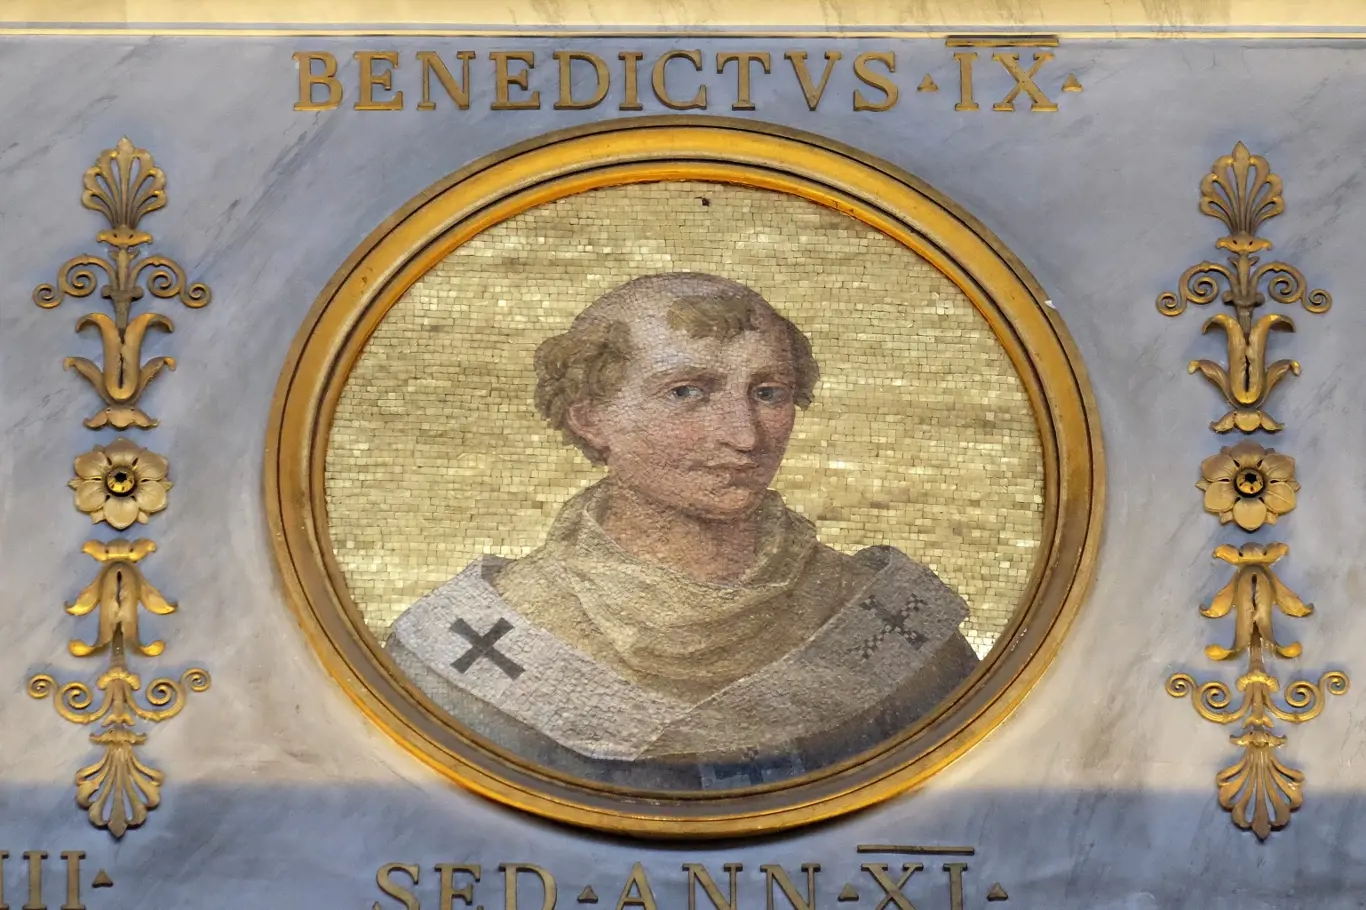 Papež Benedikt IX byl považován za zhýralého a hříšného